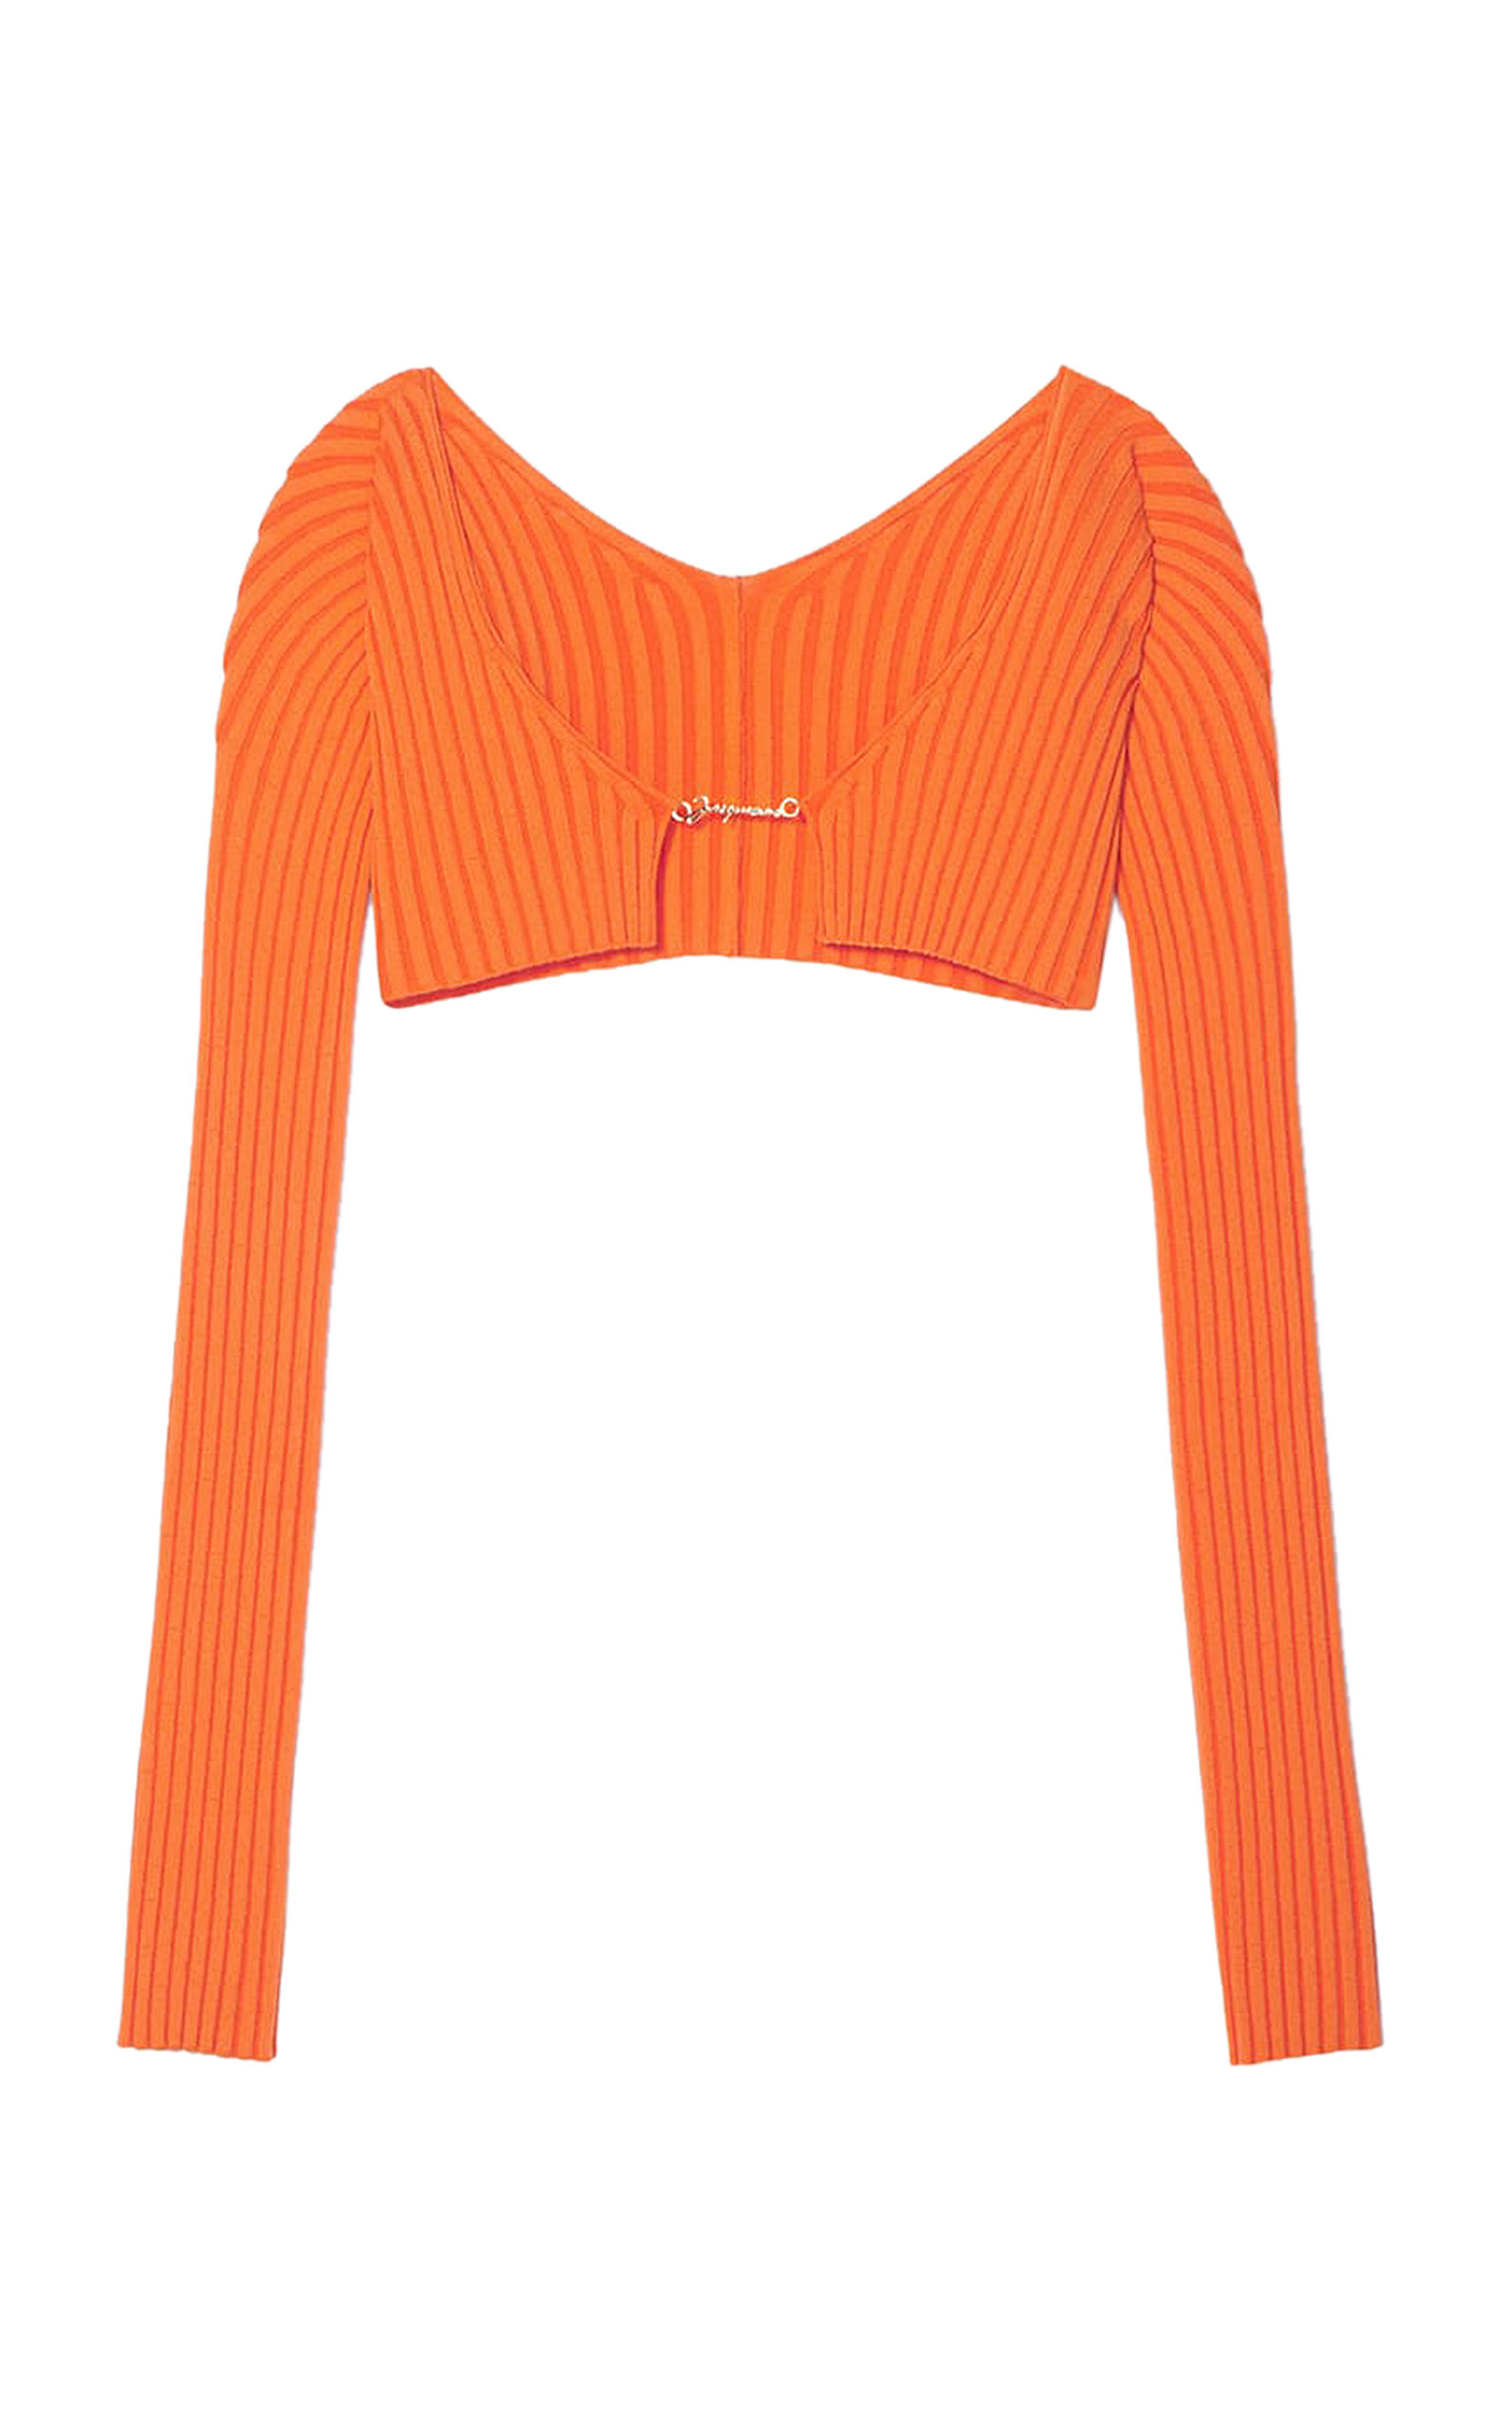 Jacquemus - Women's Pralù Cropped Ribbed-Knit Top - Orange - Moda Operandi